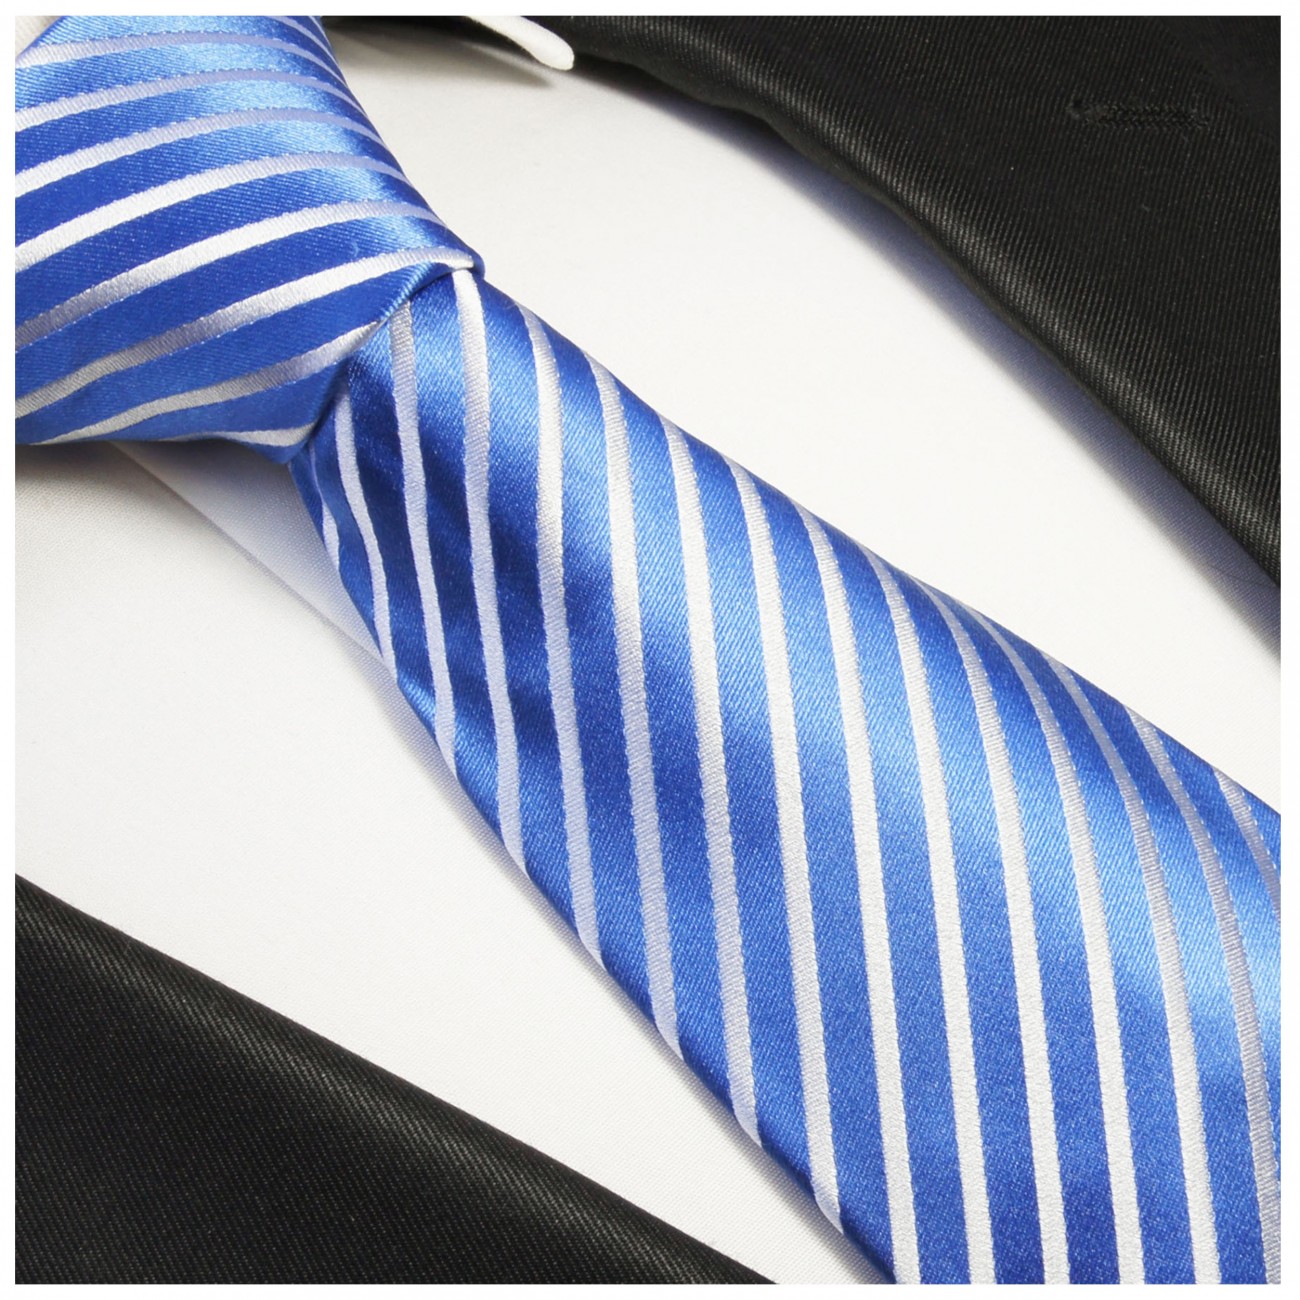 Krawatte blau weiß gestreift Seide 923